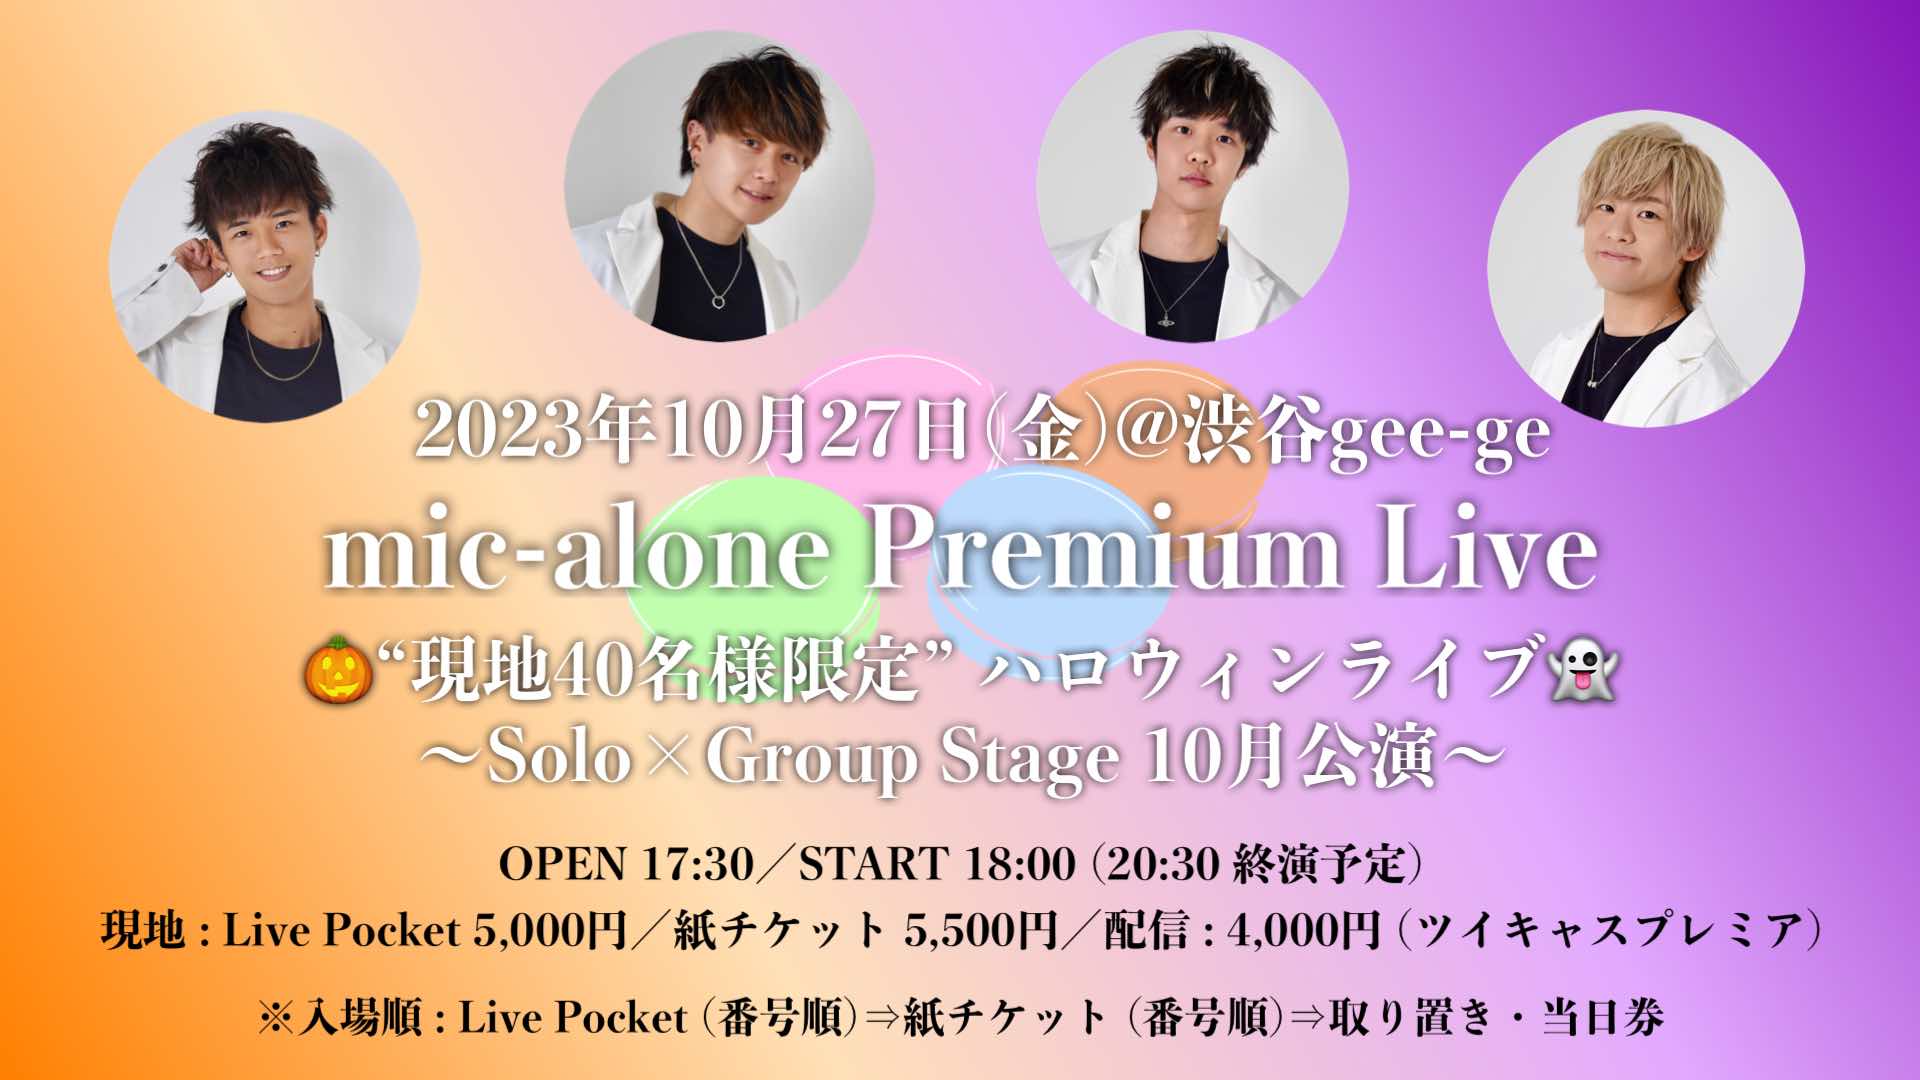 10/27(金)mic-alone Premium Live -ハロウィンライブ-